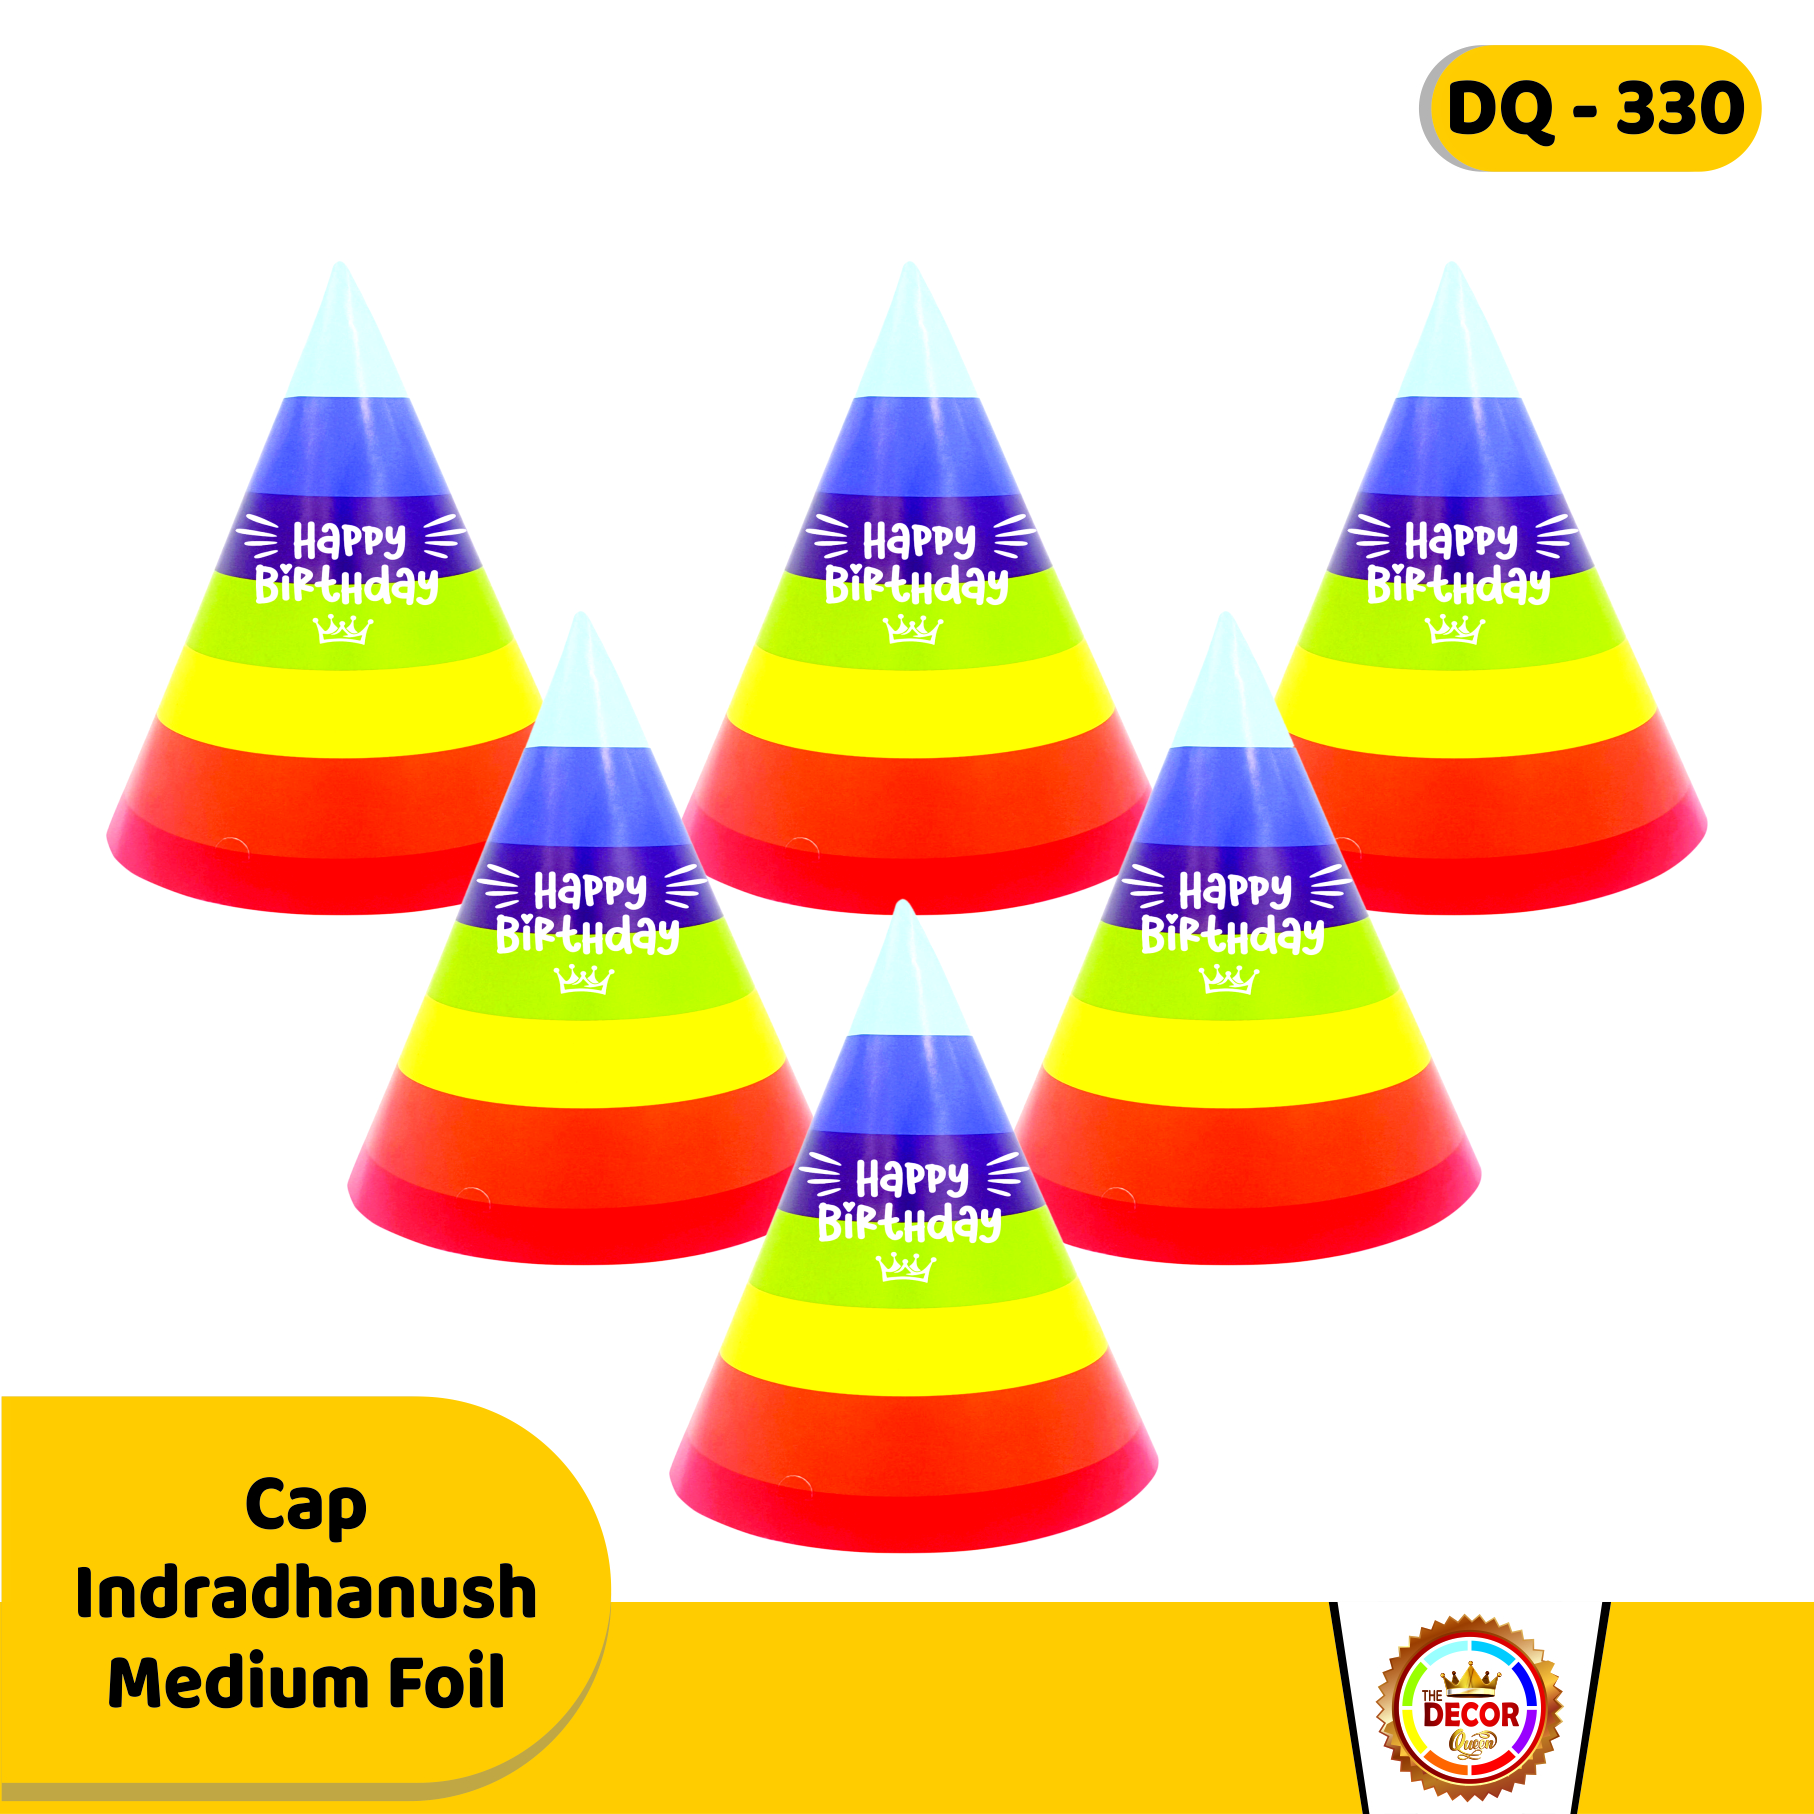 Cap Indradhanush Medium Foil  |Party Products|Cap